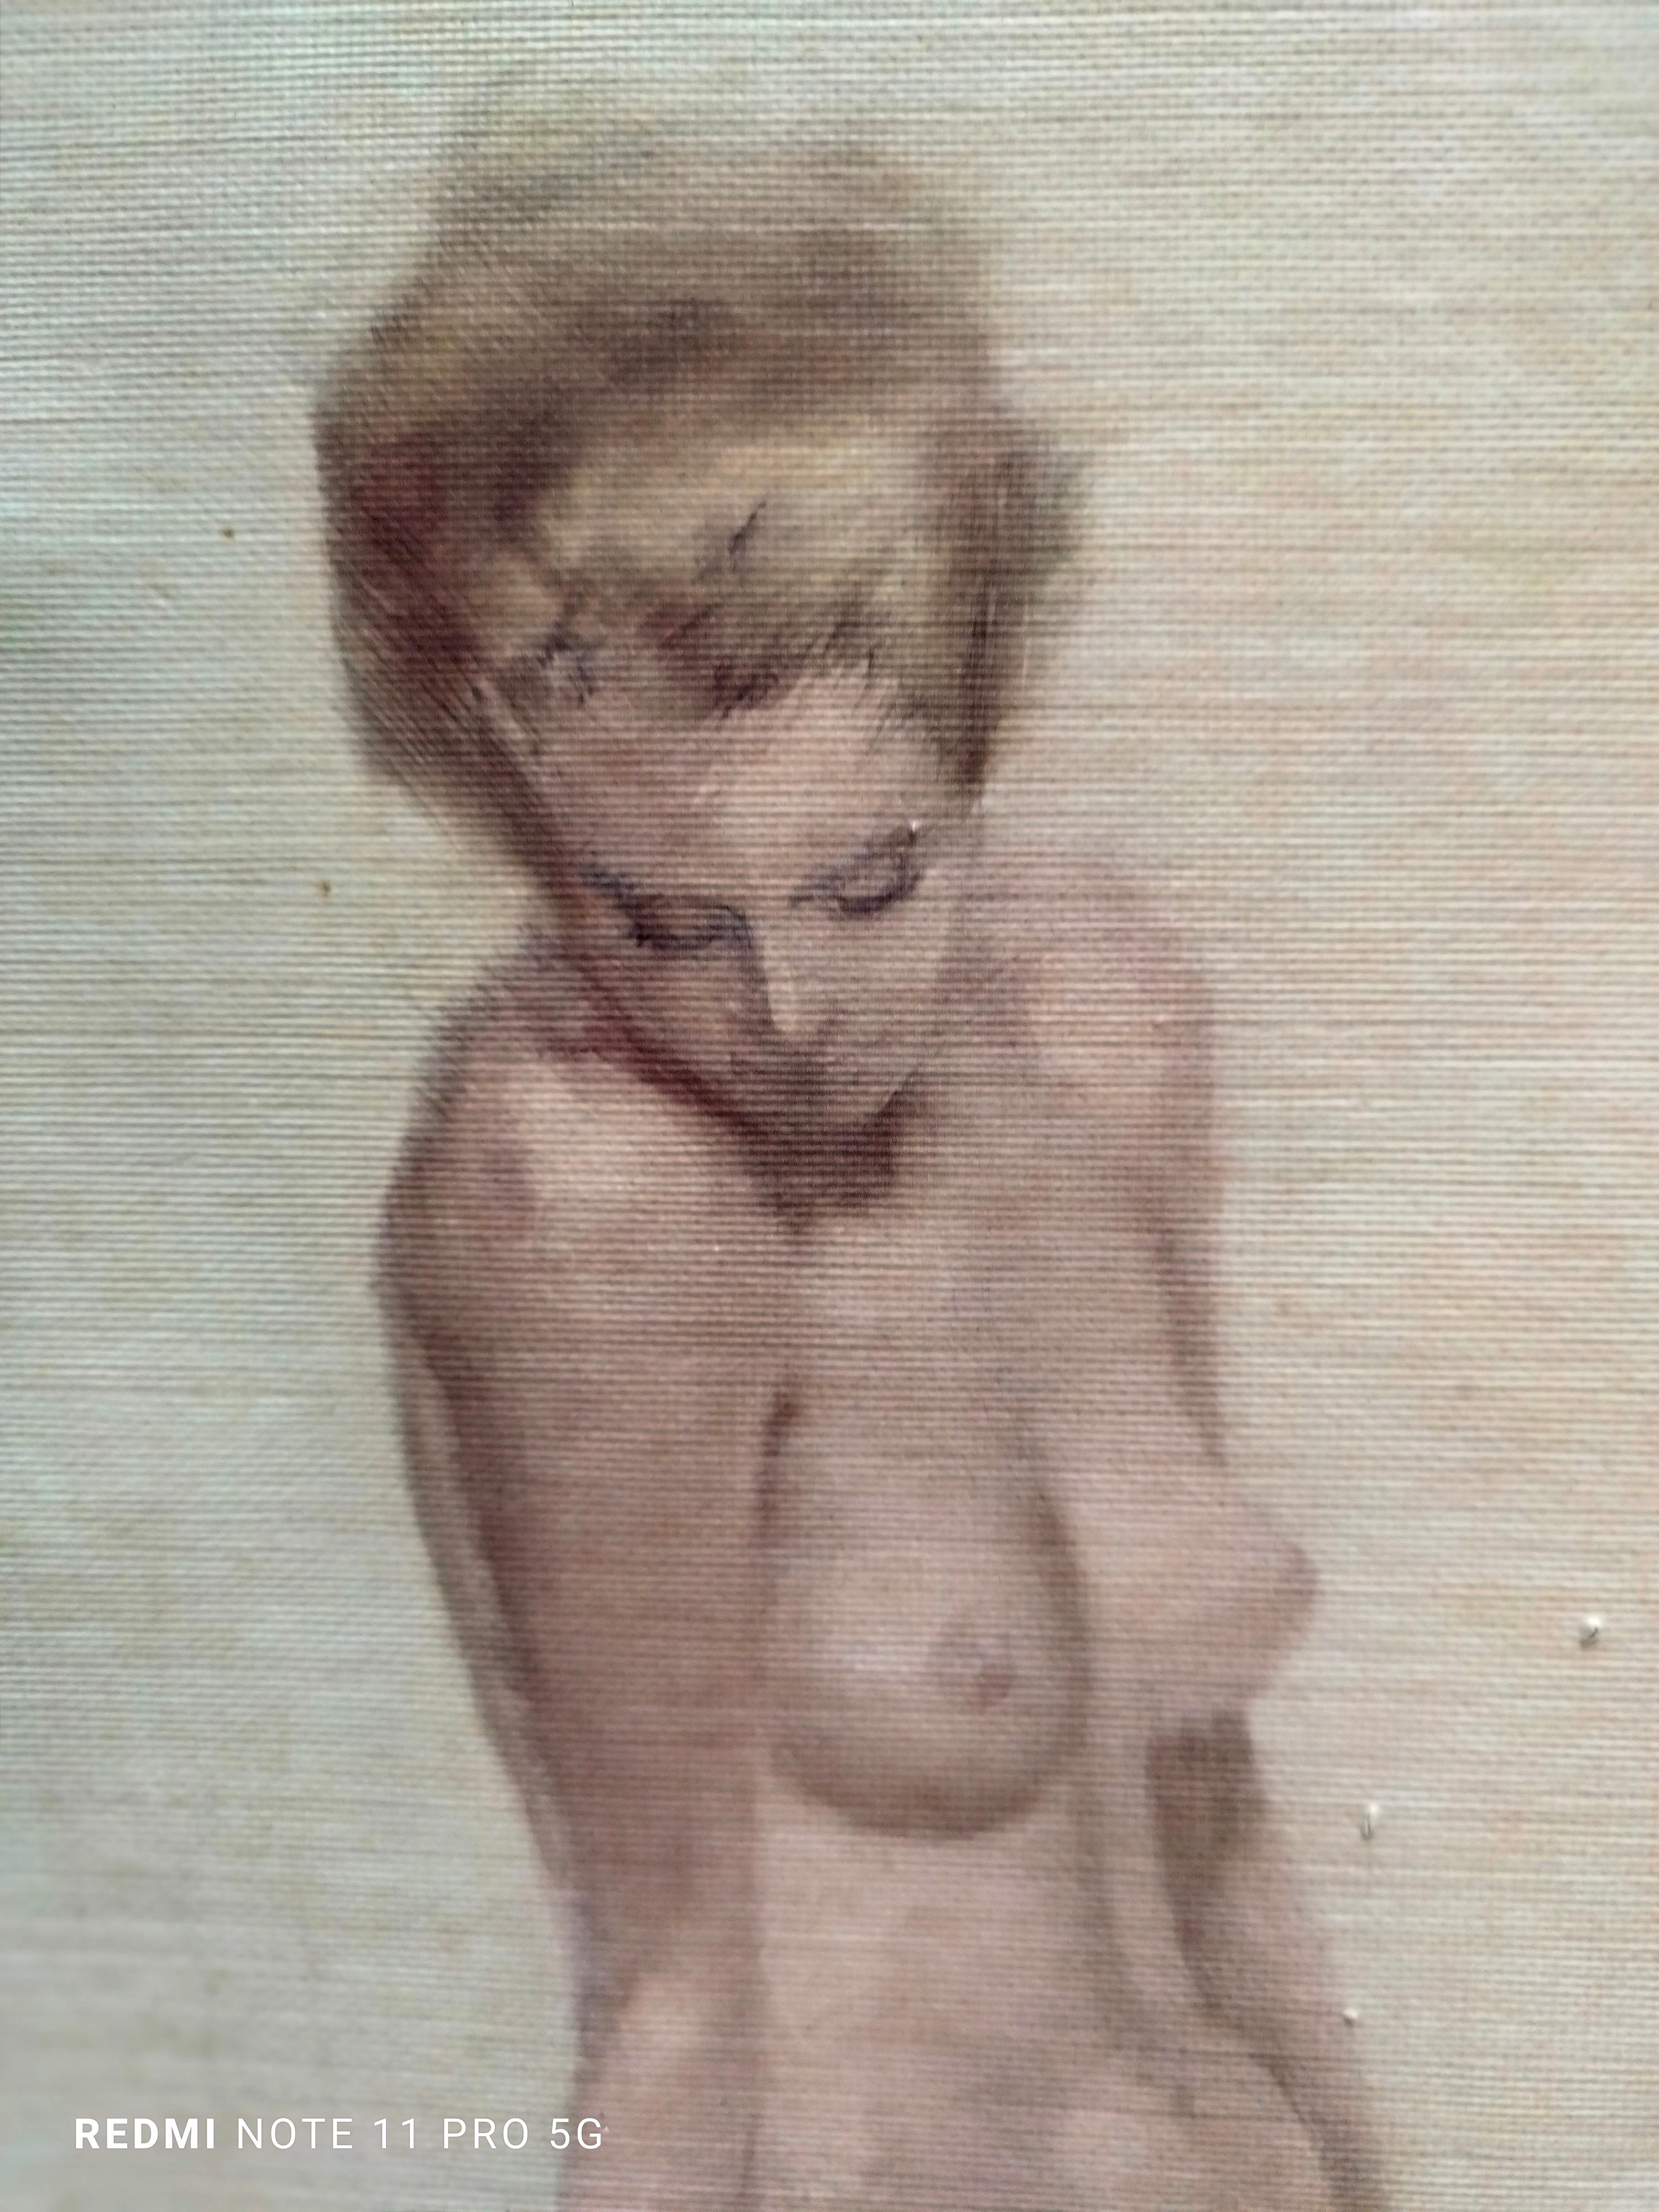 WOMAN'S NUDE - Impression giclée sur toile - Moderne Print par Marcello Cassinari Vettor